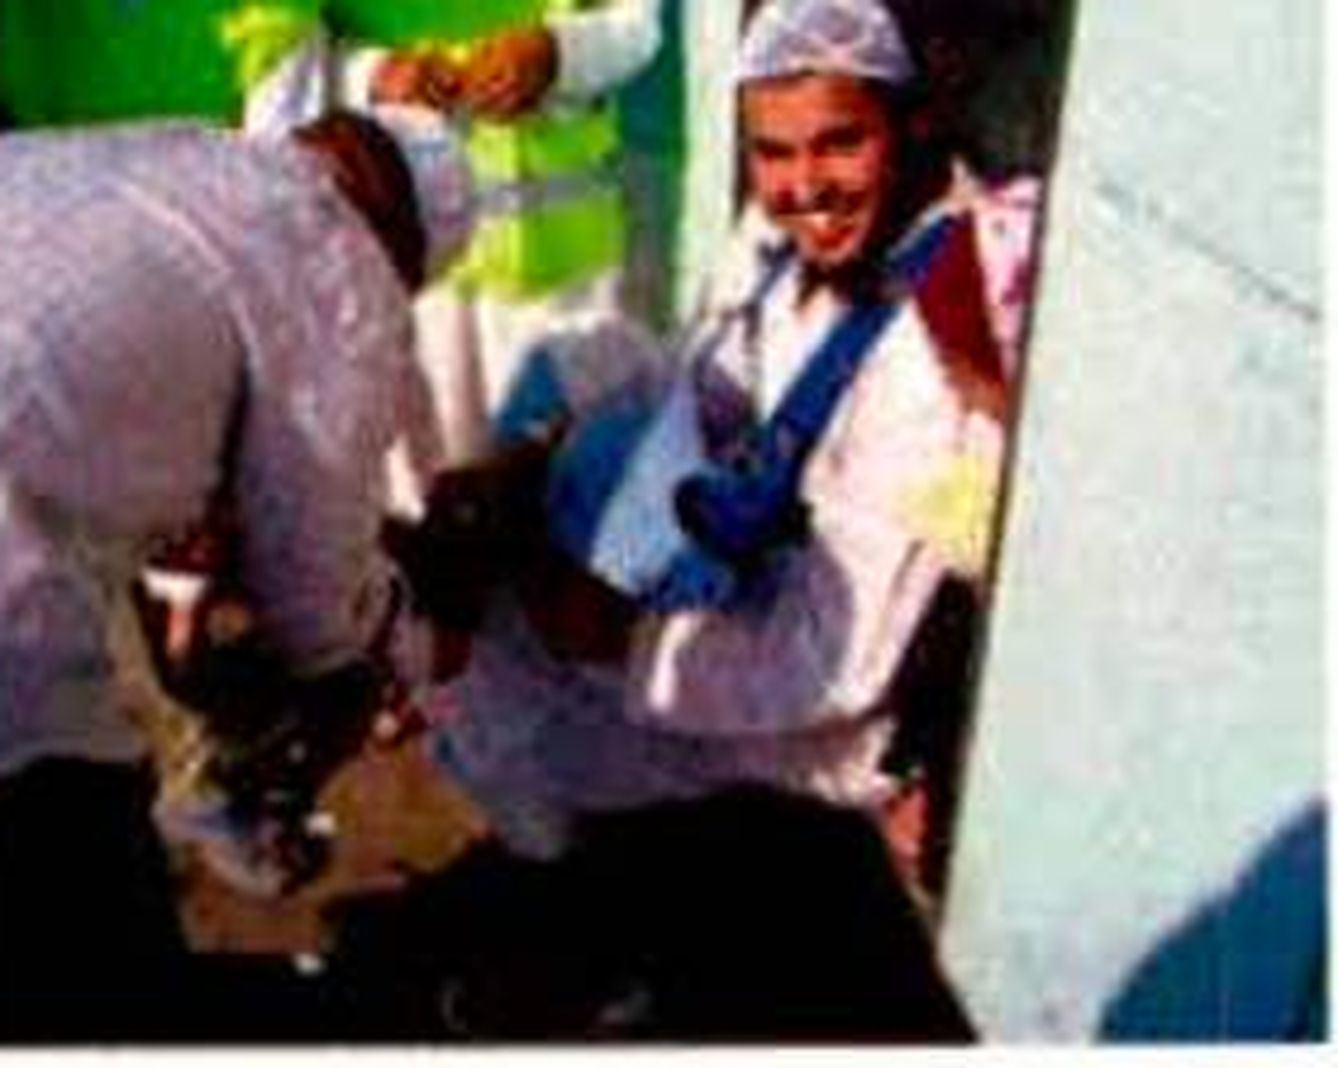 Mohamed El Mahdaoui, lavándose los pies durante el viaje a la Meca.